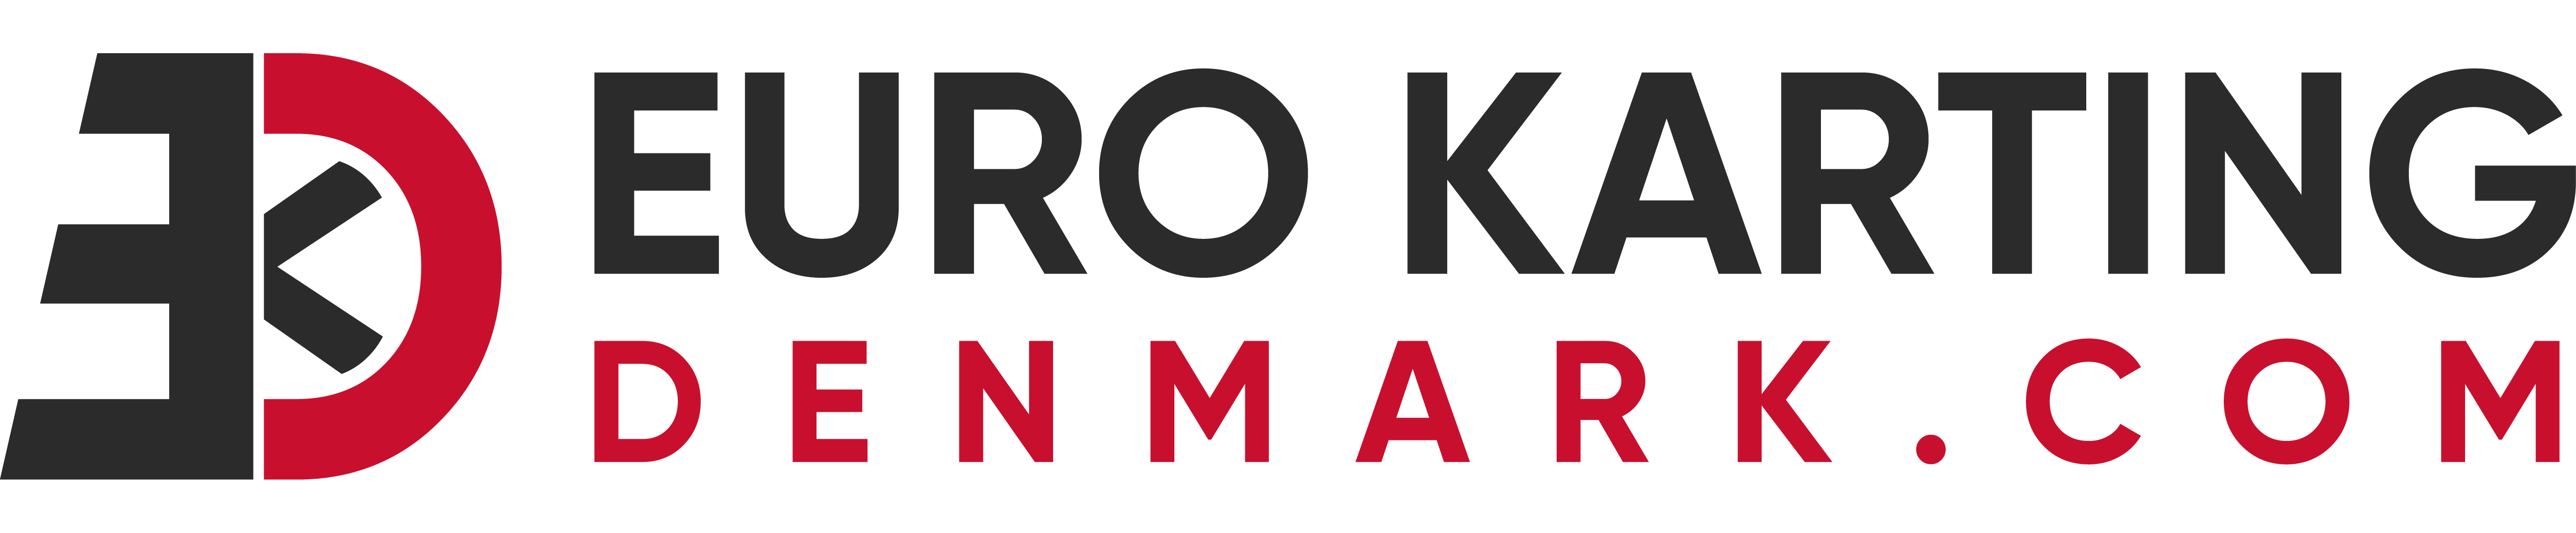 euro-karting-denmark-com logo